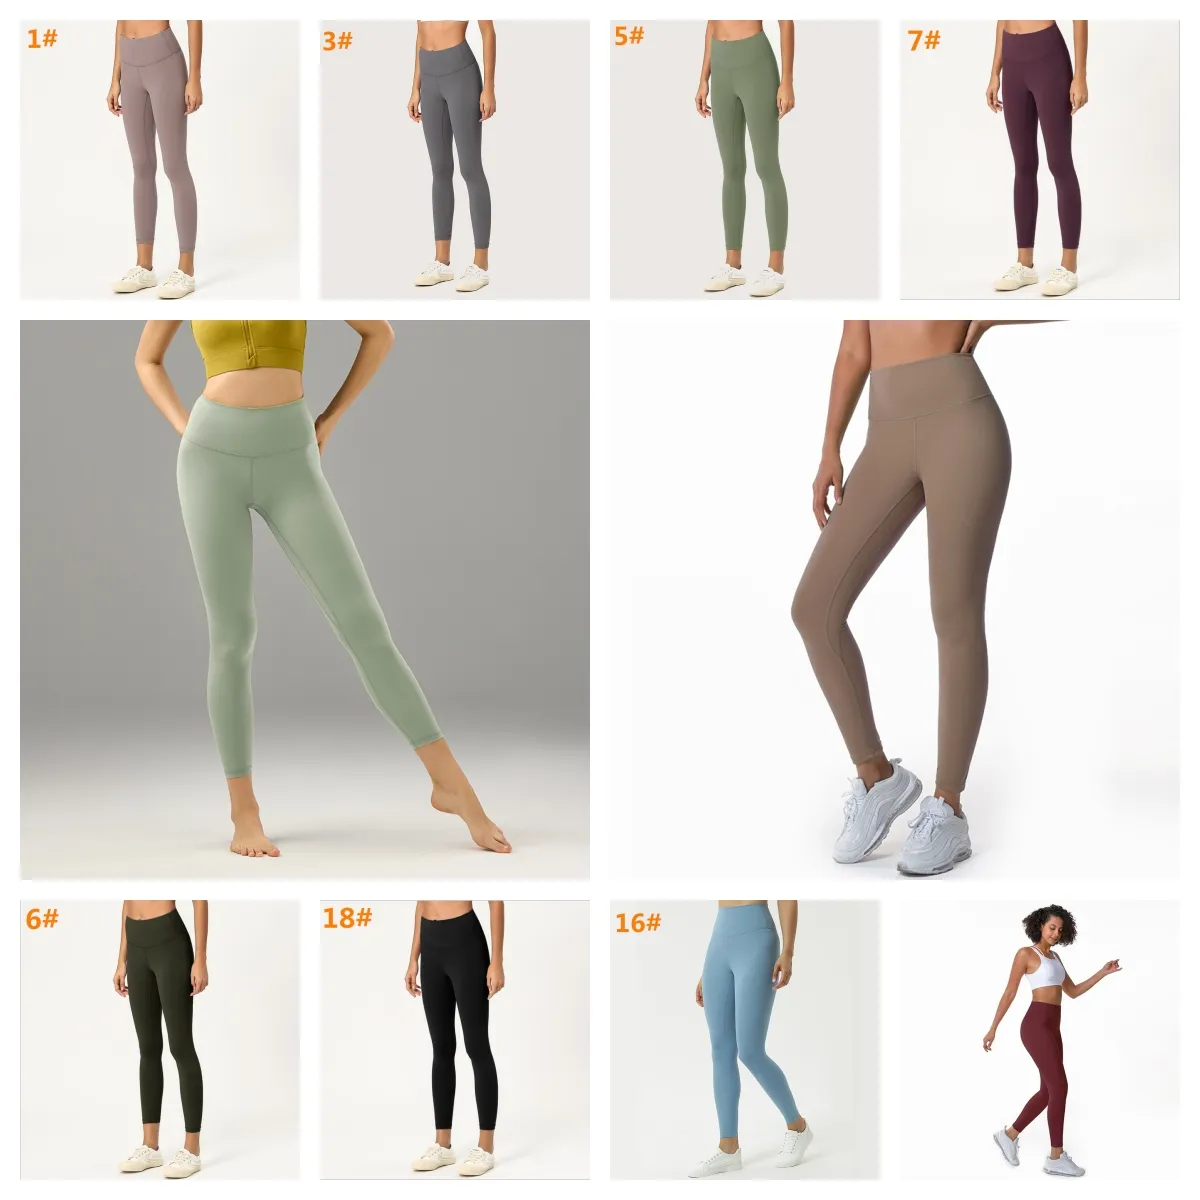 Nouveaux costumes de mode de haute qualité couleur unie femmes pantalons de yoga taille sport vêtements de sport leggings élastique fitness dame extérieur legging aligner collants